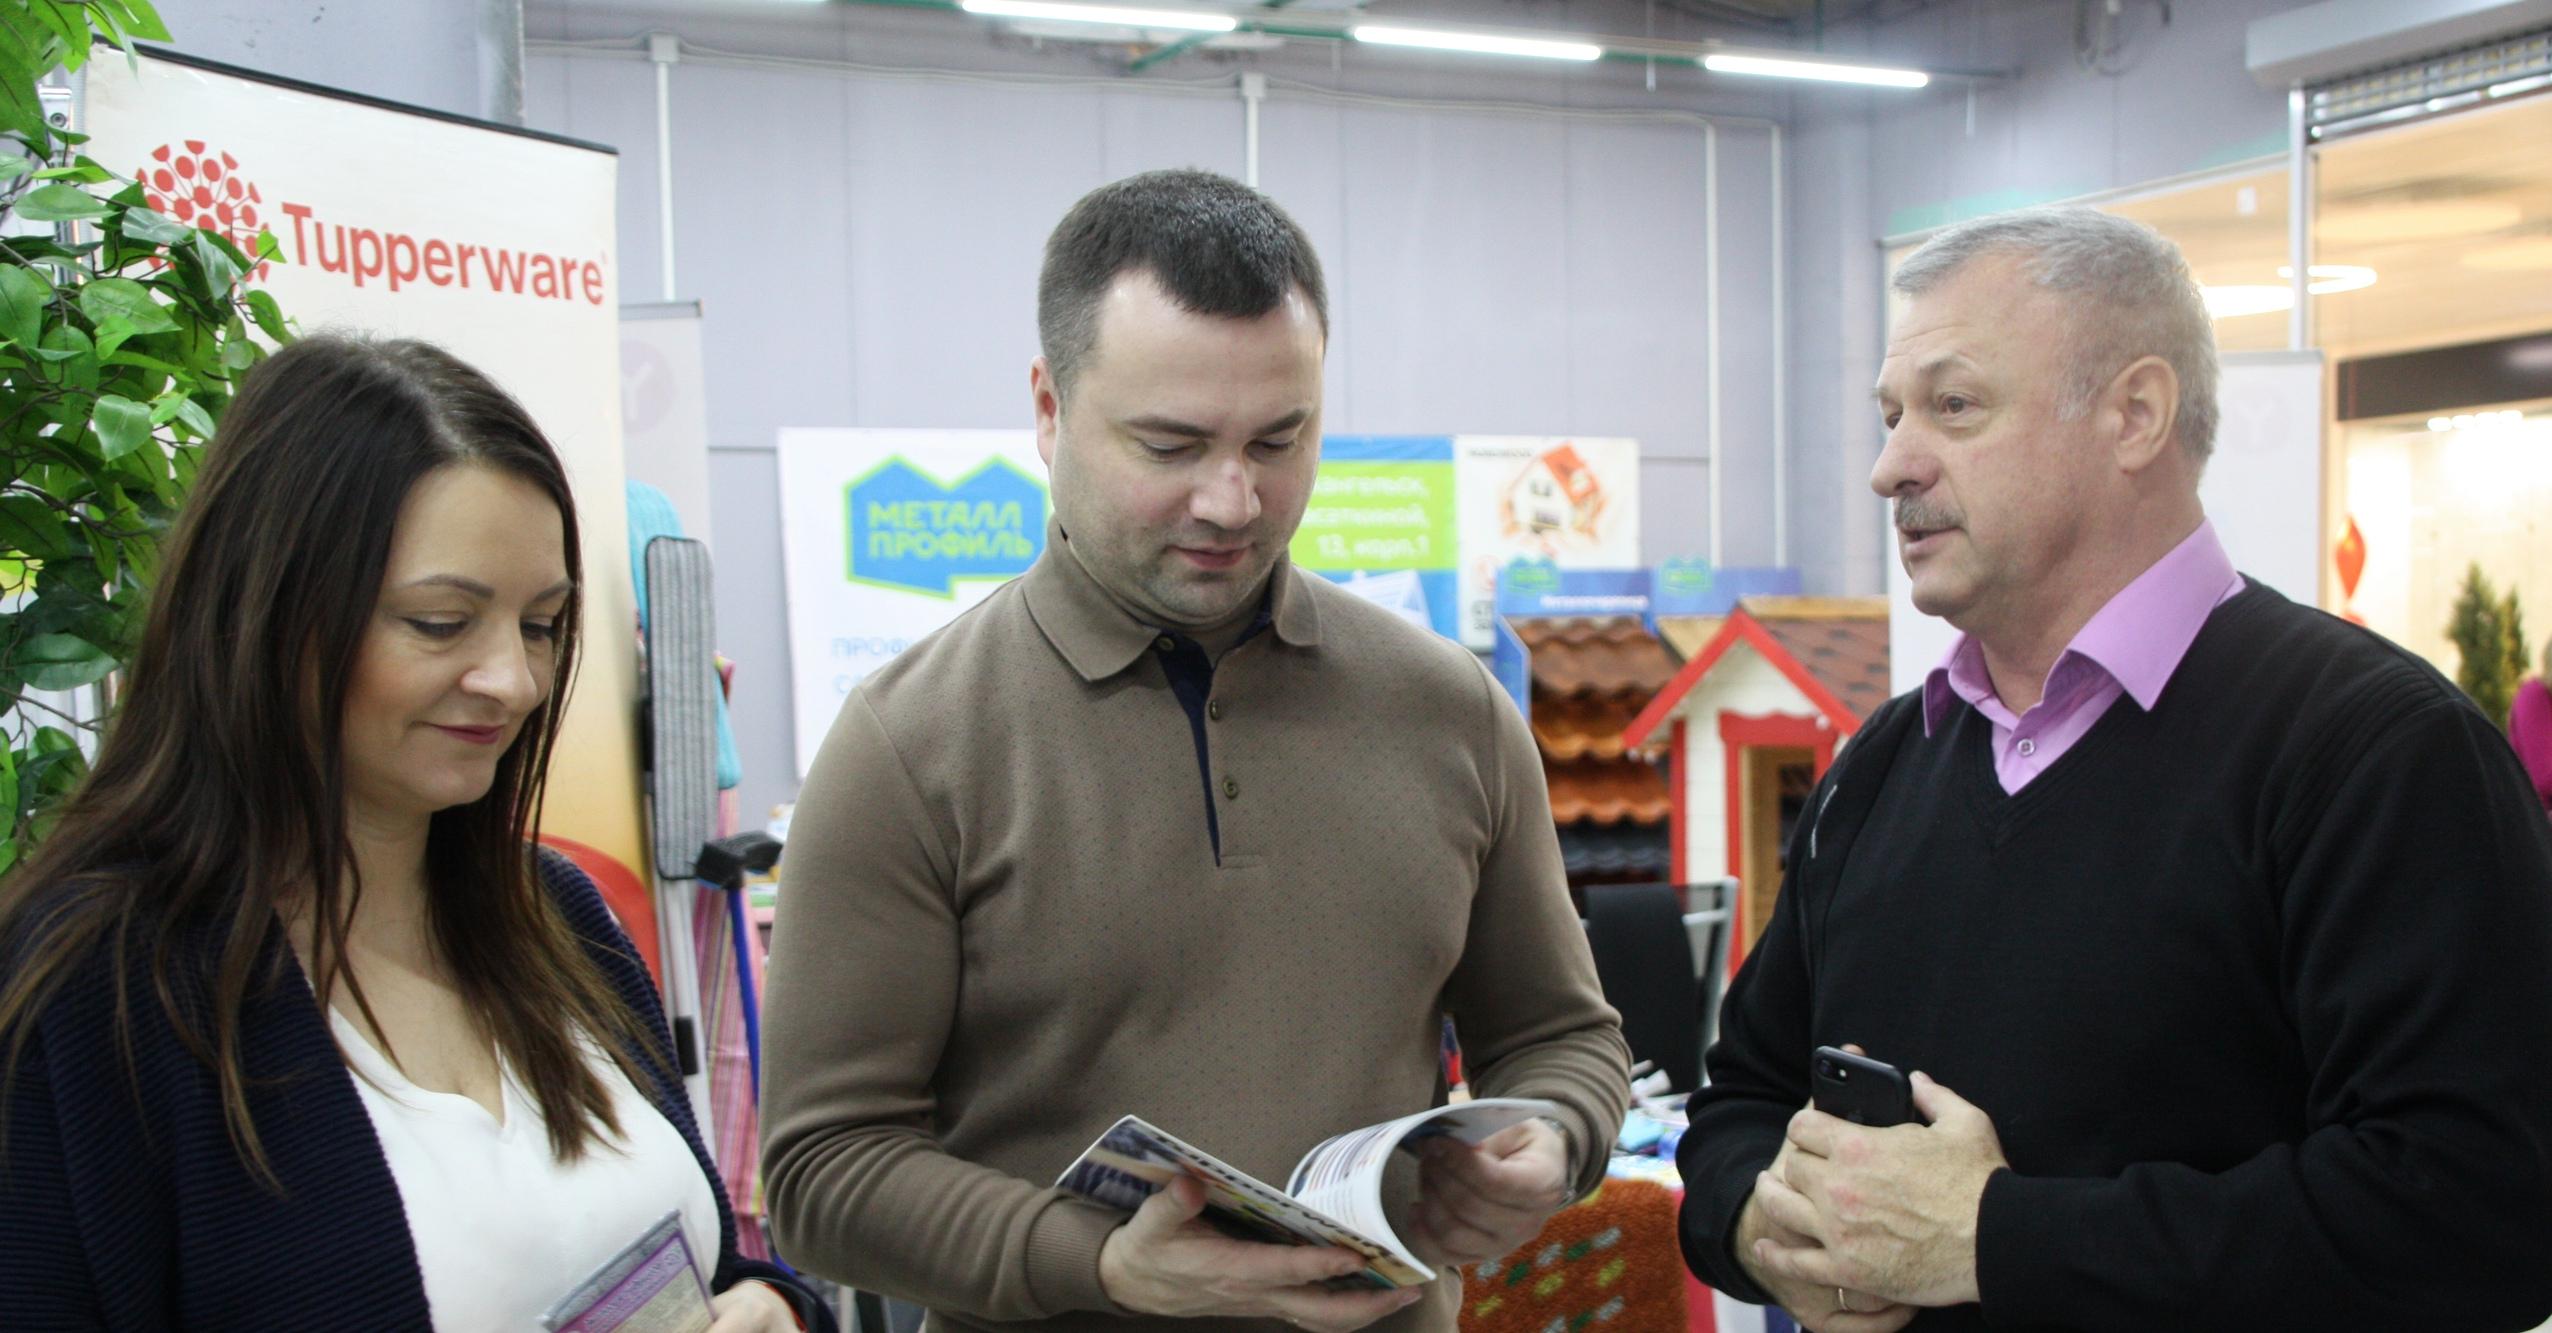 Министр экономического развития Архангельской области Иван Кулявцев проведет отраслевую встречу с предпринимателями, которые занимаются переработкой пищевых продуктов